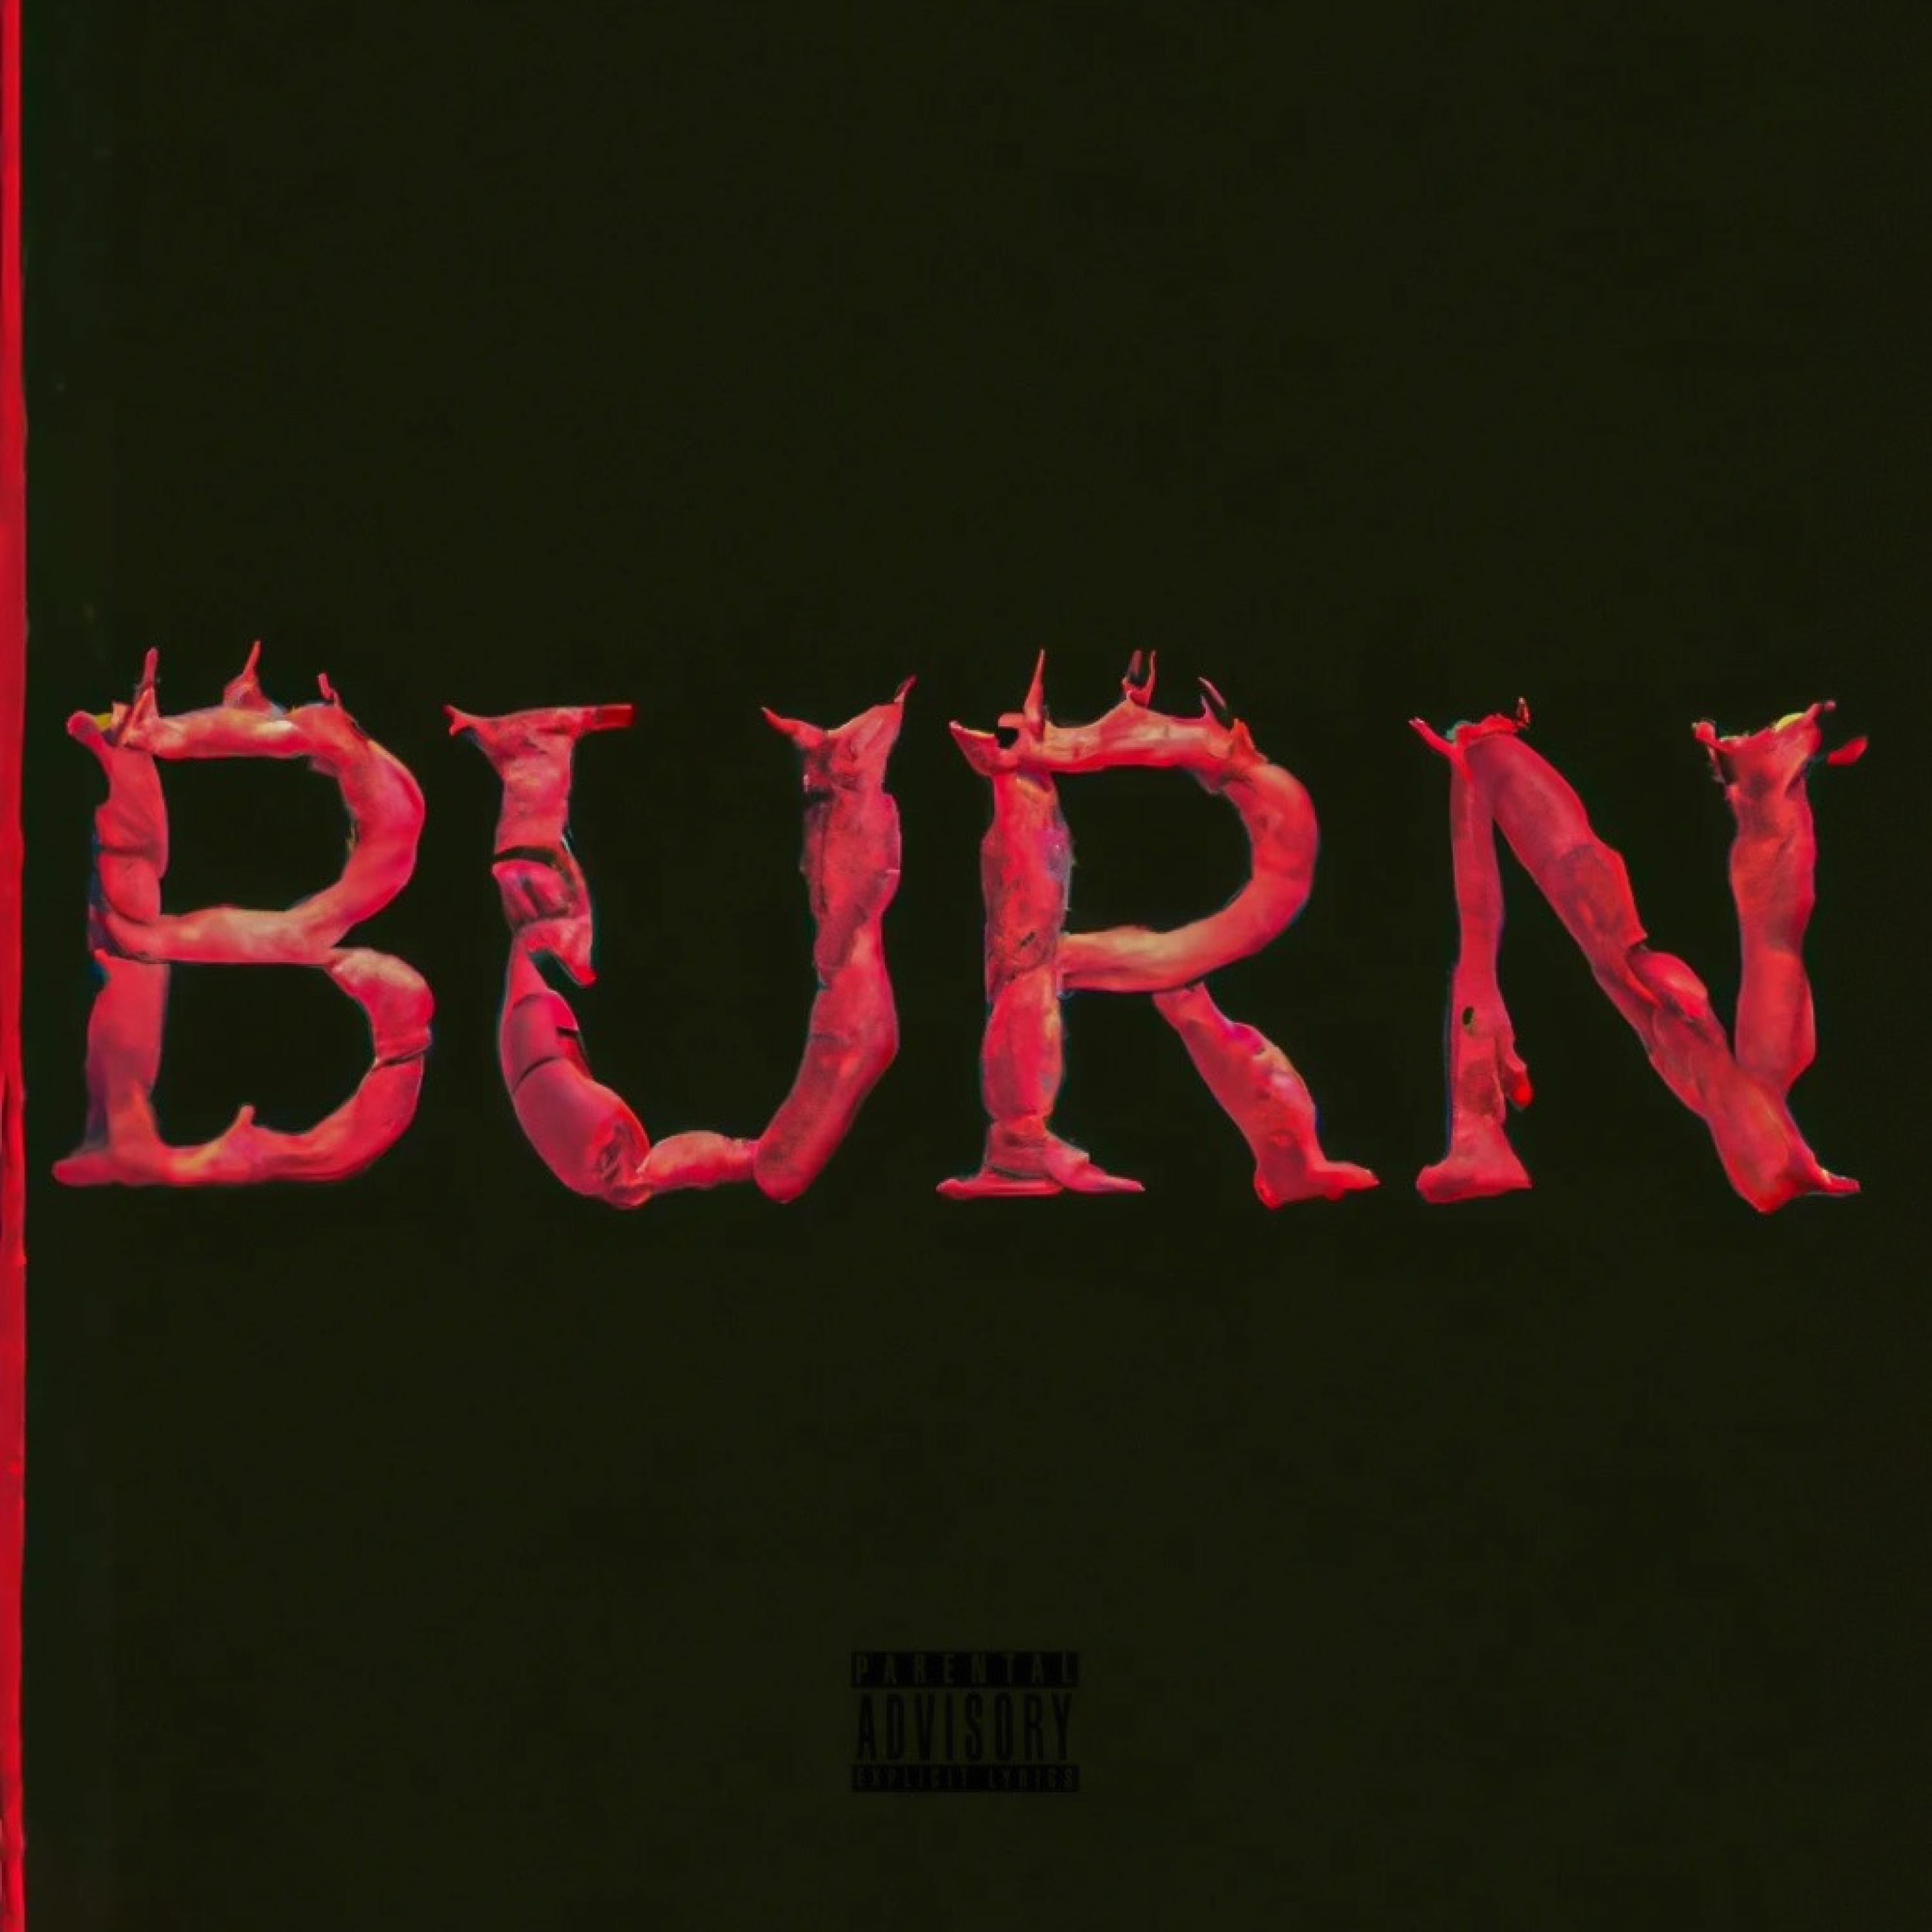 Blai$y - Burn